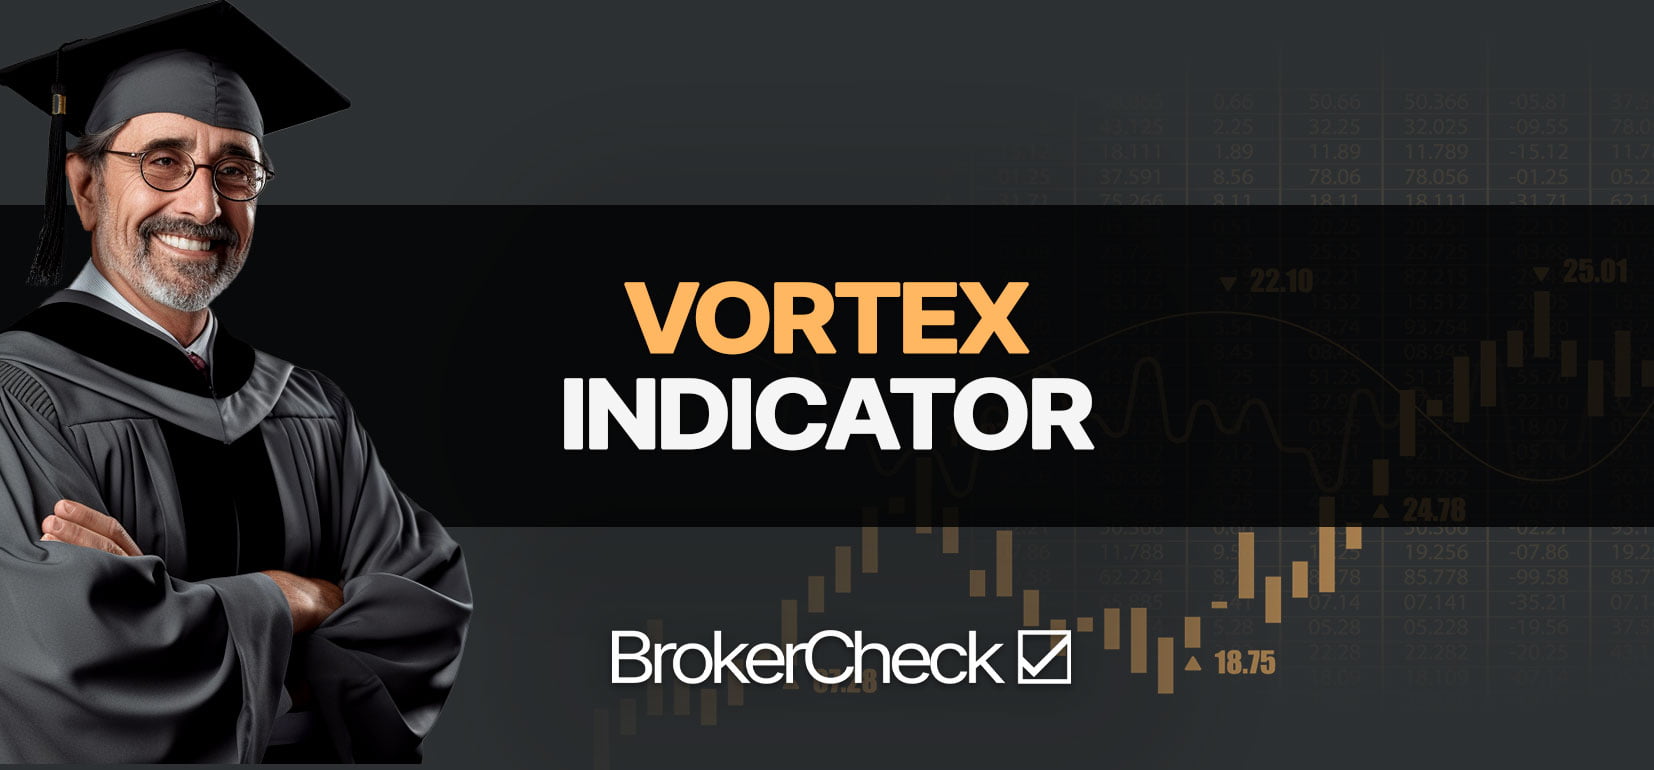 Migliori impostazioni e strategia dell'indicatore Vortex